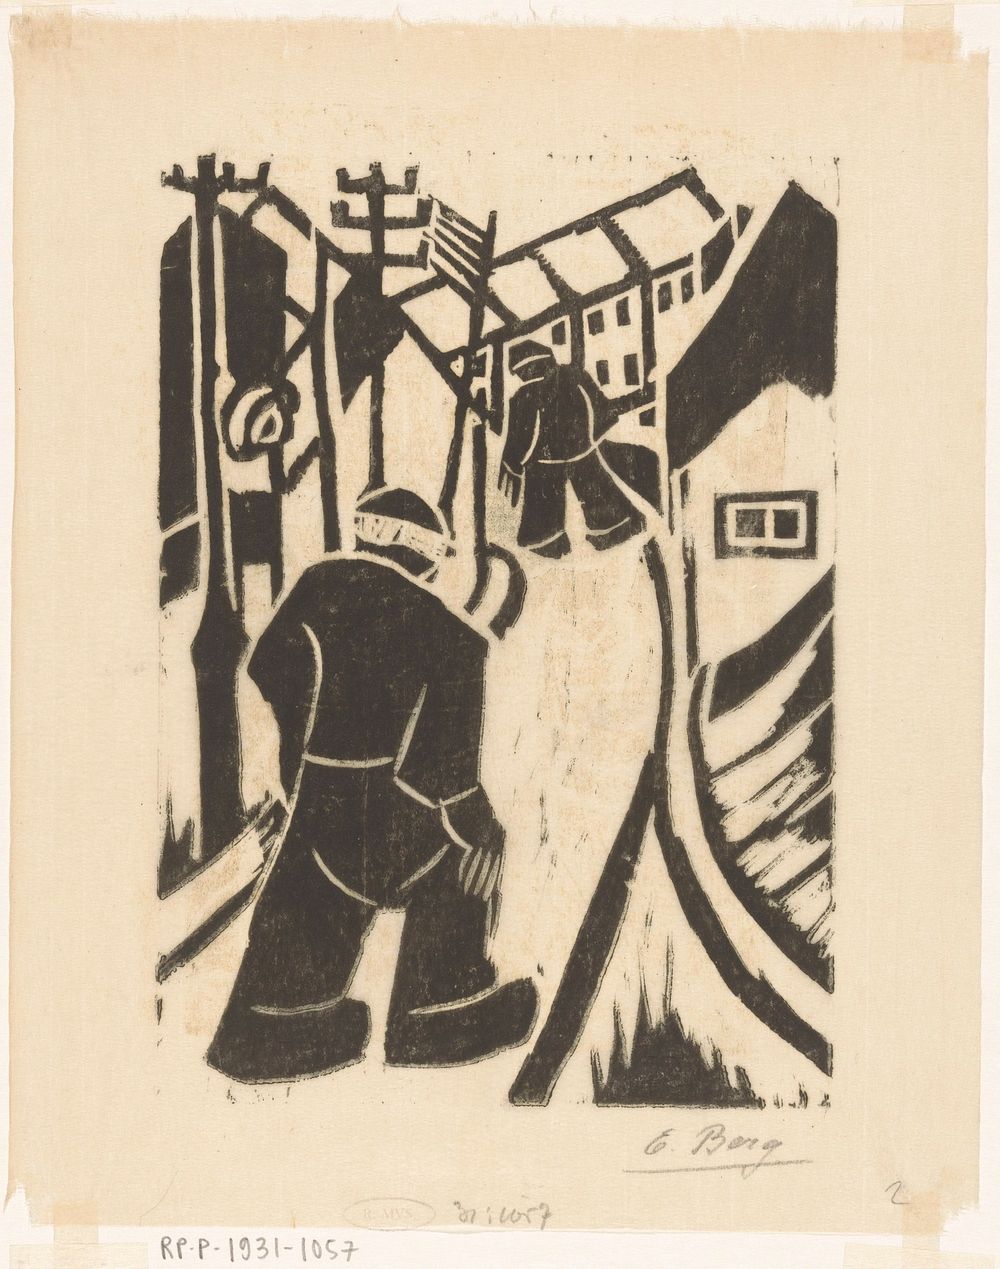 Twee figuren in dorpsstraat (c. 1930 - in or before 1931) by Else Berg